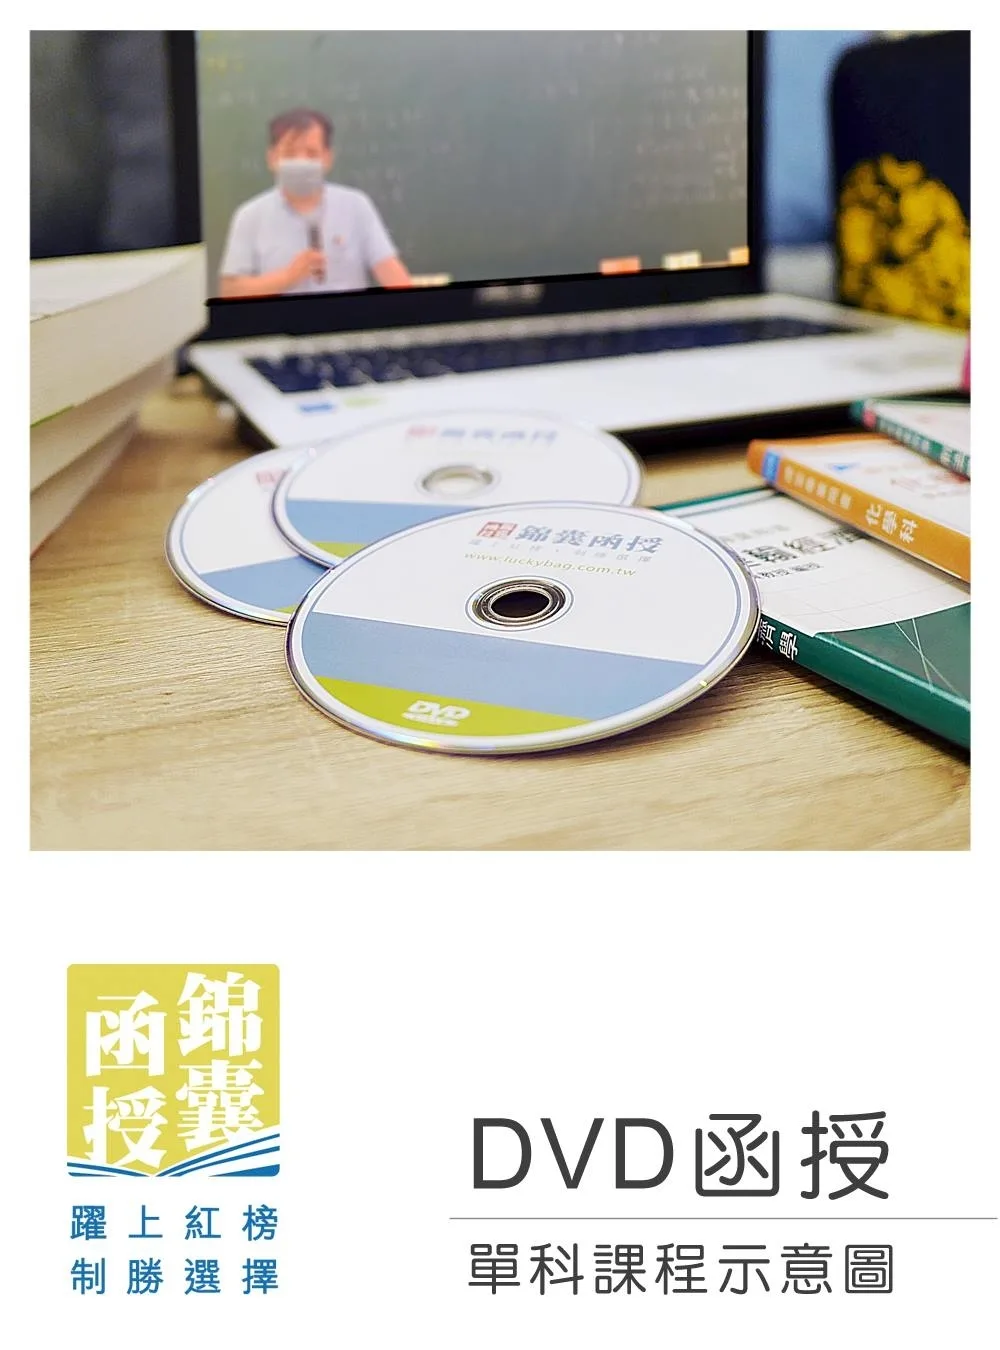 【DVD函授】土地稅法規(正規班&進階班)-單科課程(111版)